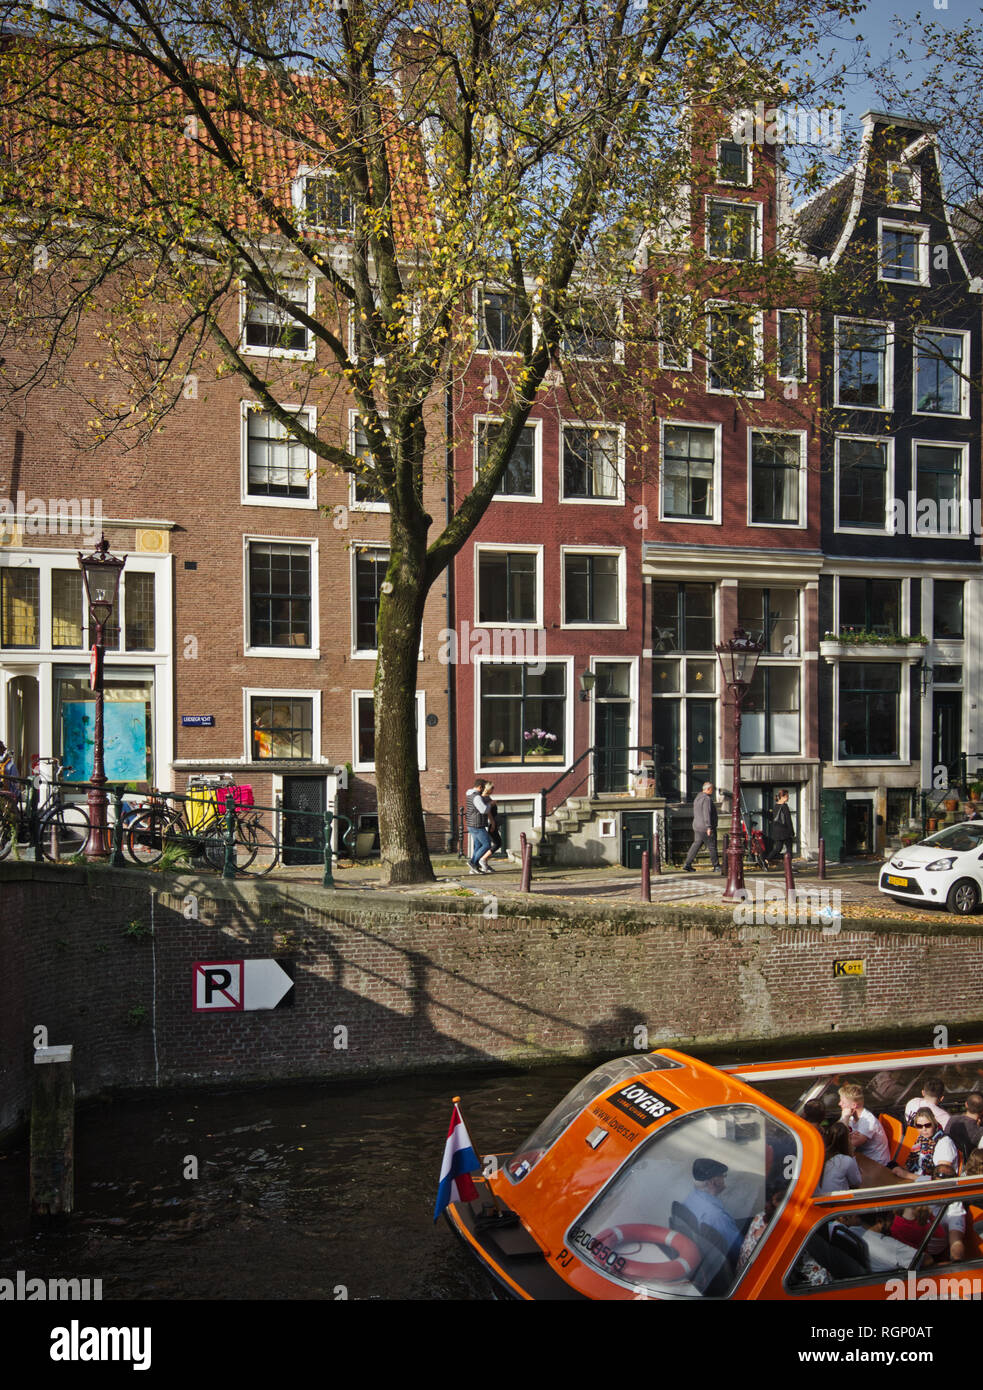 Croisières sur les canaux et les amoureux de l'architecture typique des Pays-Bas, Amsterdam, Pays-Bas Banque D'Images